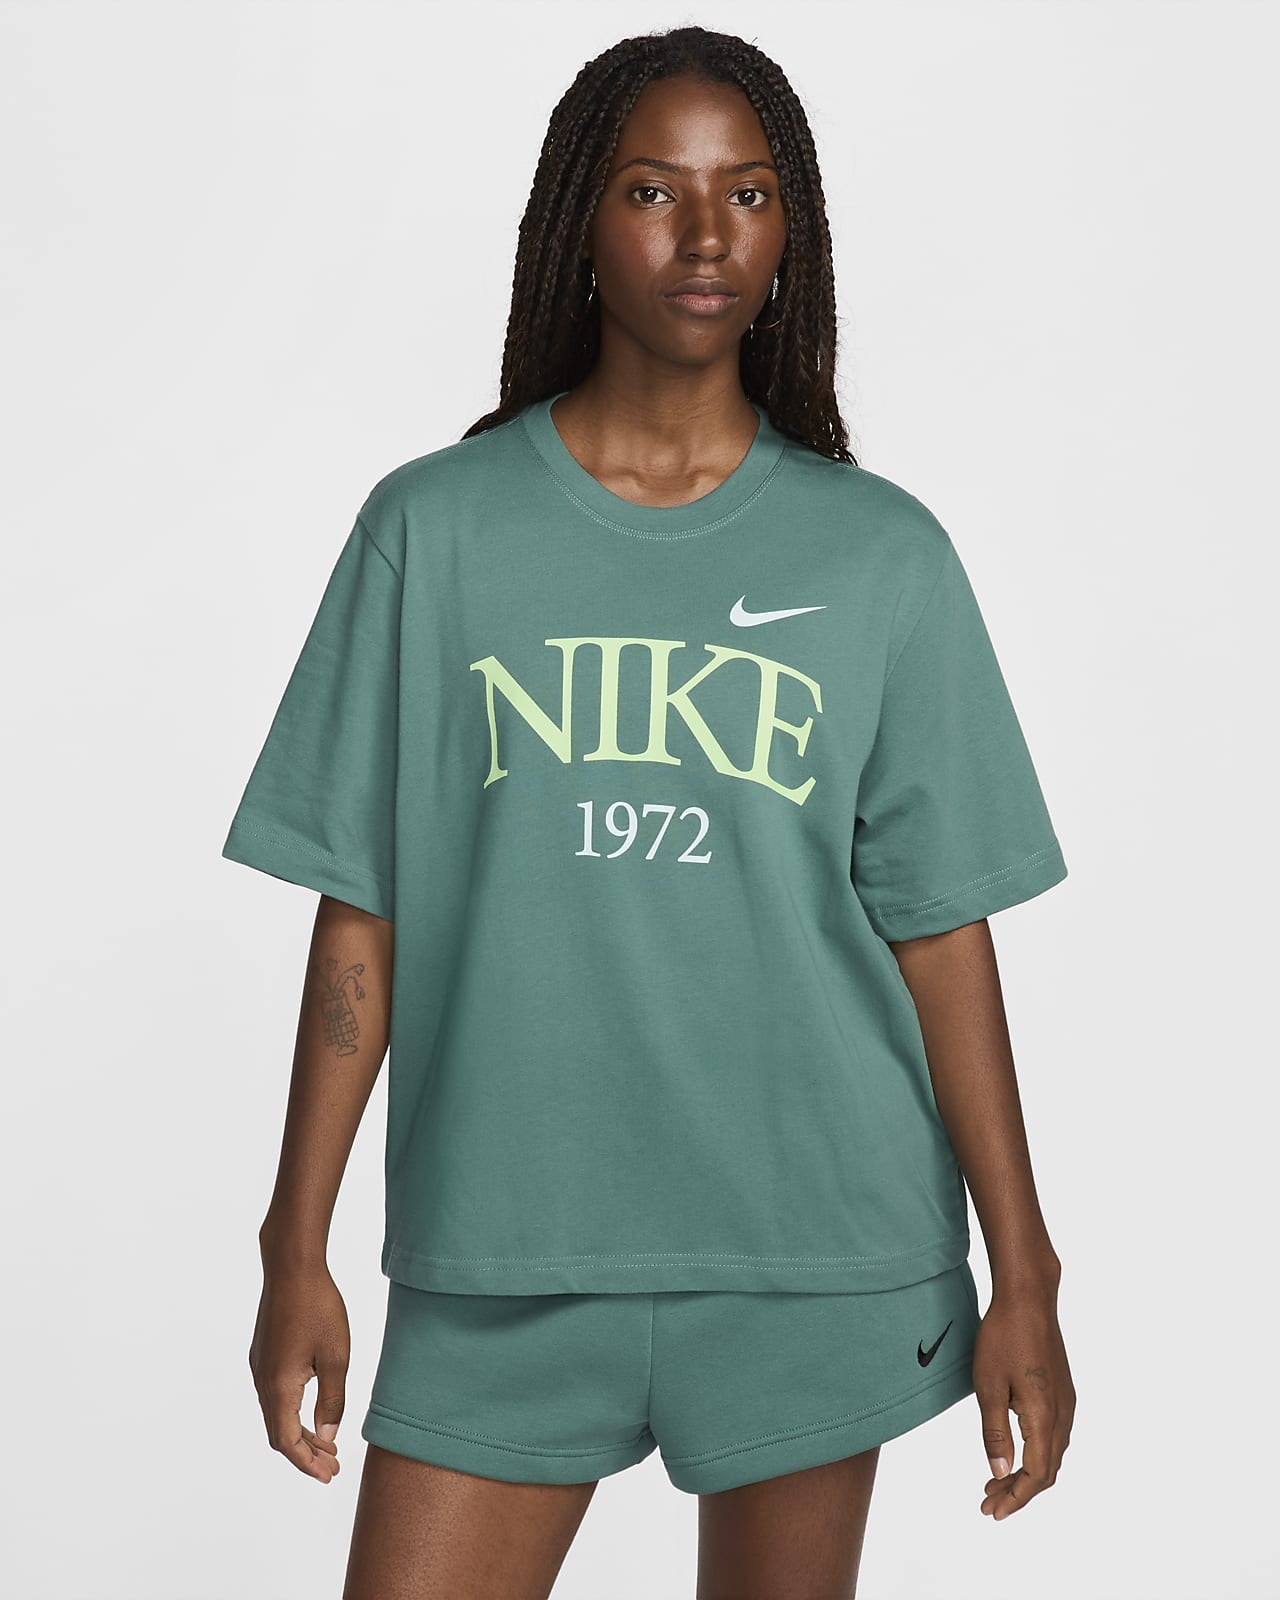 Short Sleeve, T-shirts, Sportswear, Women, Nike